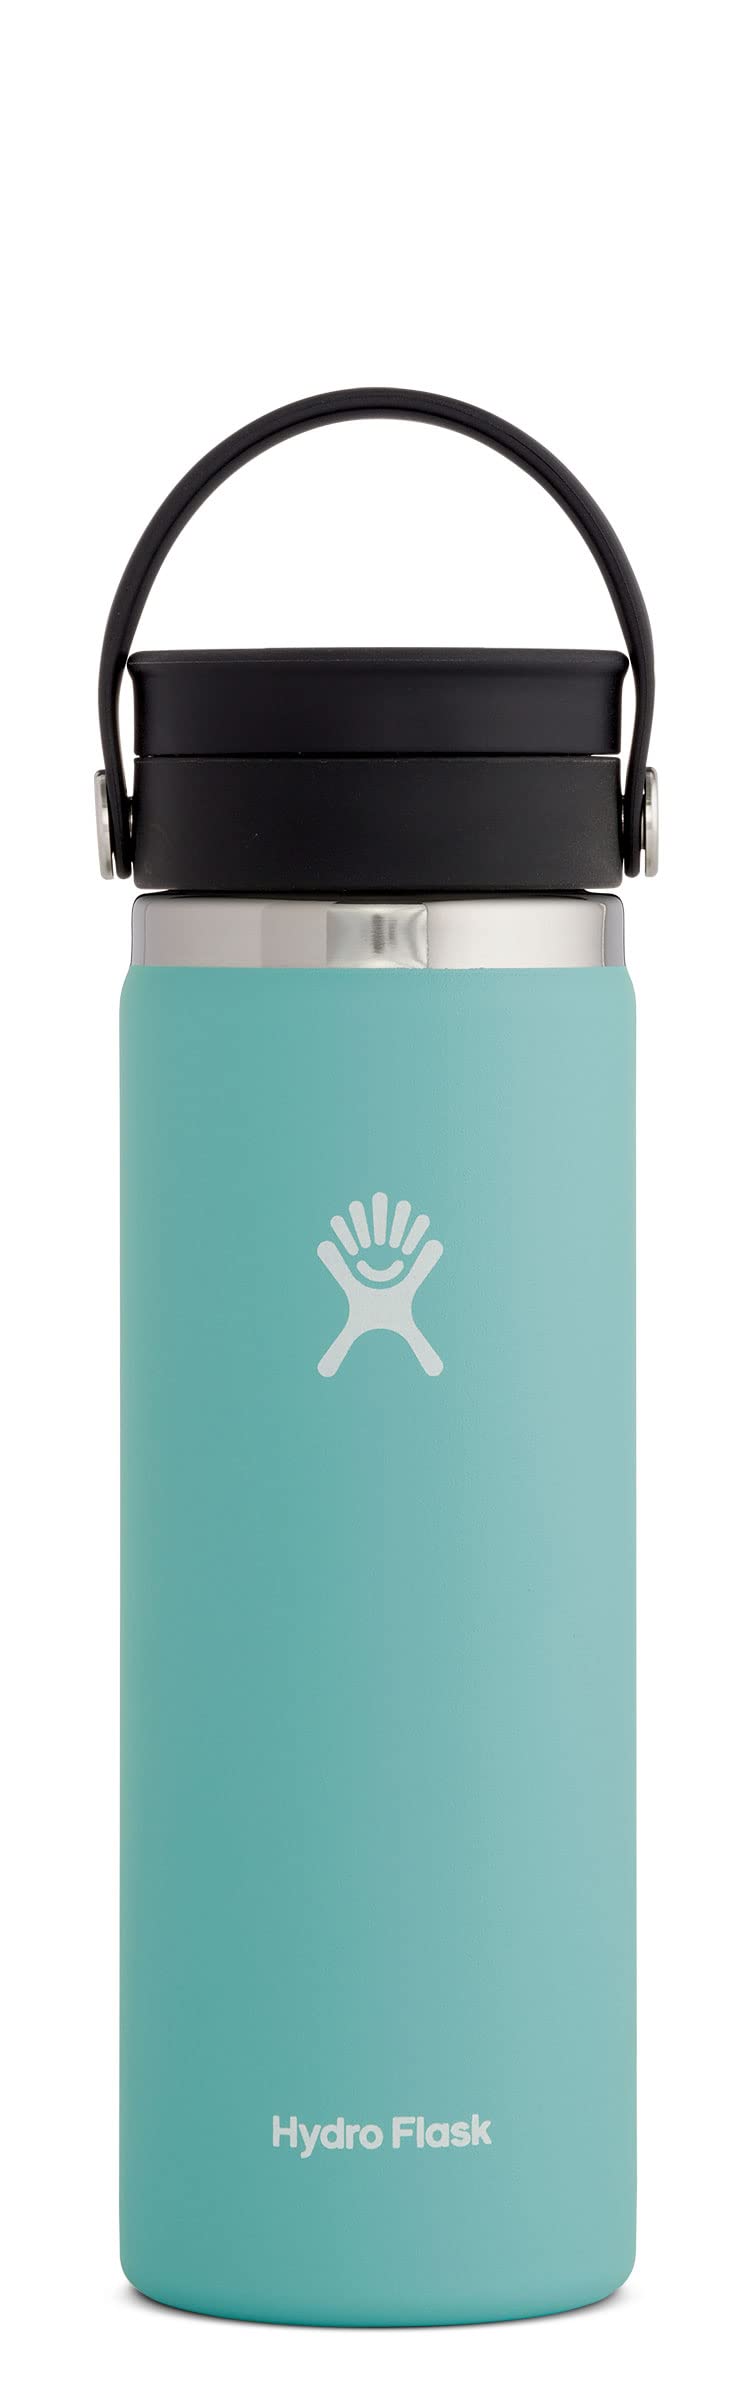 Hydro Flask 20 オンス広口ボトル (フレックス シップ リッド付き) アルパイン